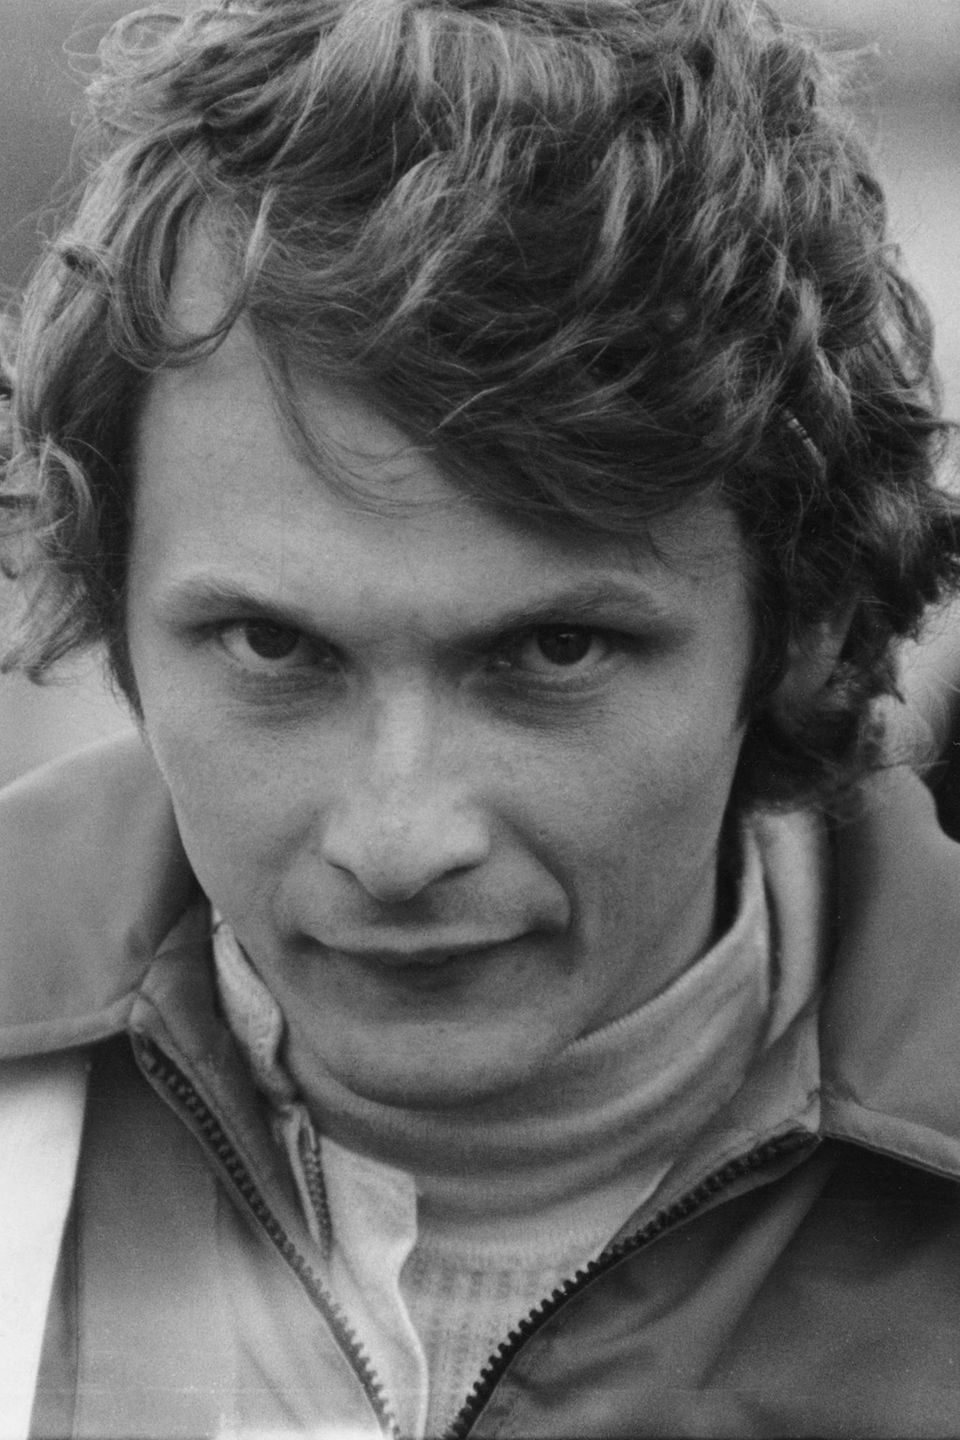 Niki Lauda wird am 22. Februar 1949 in Wien geboren. Mit 15 Jahren kauft sich der Sohn wohlhabender Eltern sein erstes Auto, einen VW Käfer. Sein Wunsch, Rennfahrer zu werden, führt zum Zerwürfnis mit der Familie. Als 19-Jähriger fährt Lauda sein erstes Rennen - mit einem Mini Cooper. Er belegt auf Anhieb den zweiten Platz. 1971 startet er beim Großen Preis von Österreich erstmals in der Formel 1.